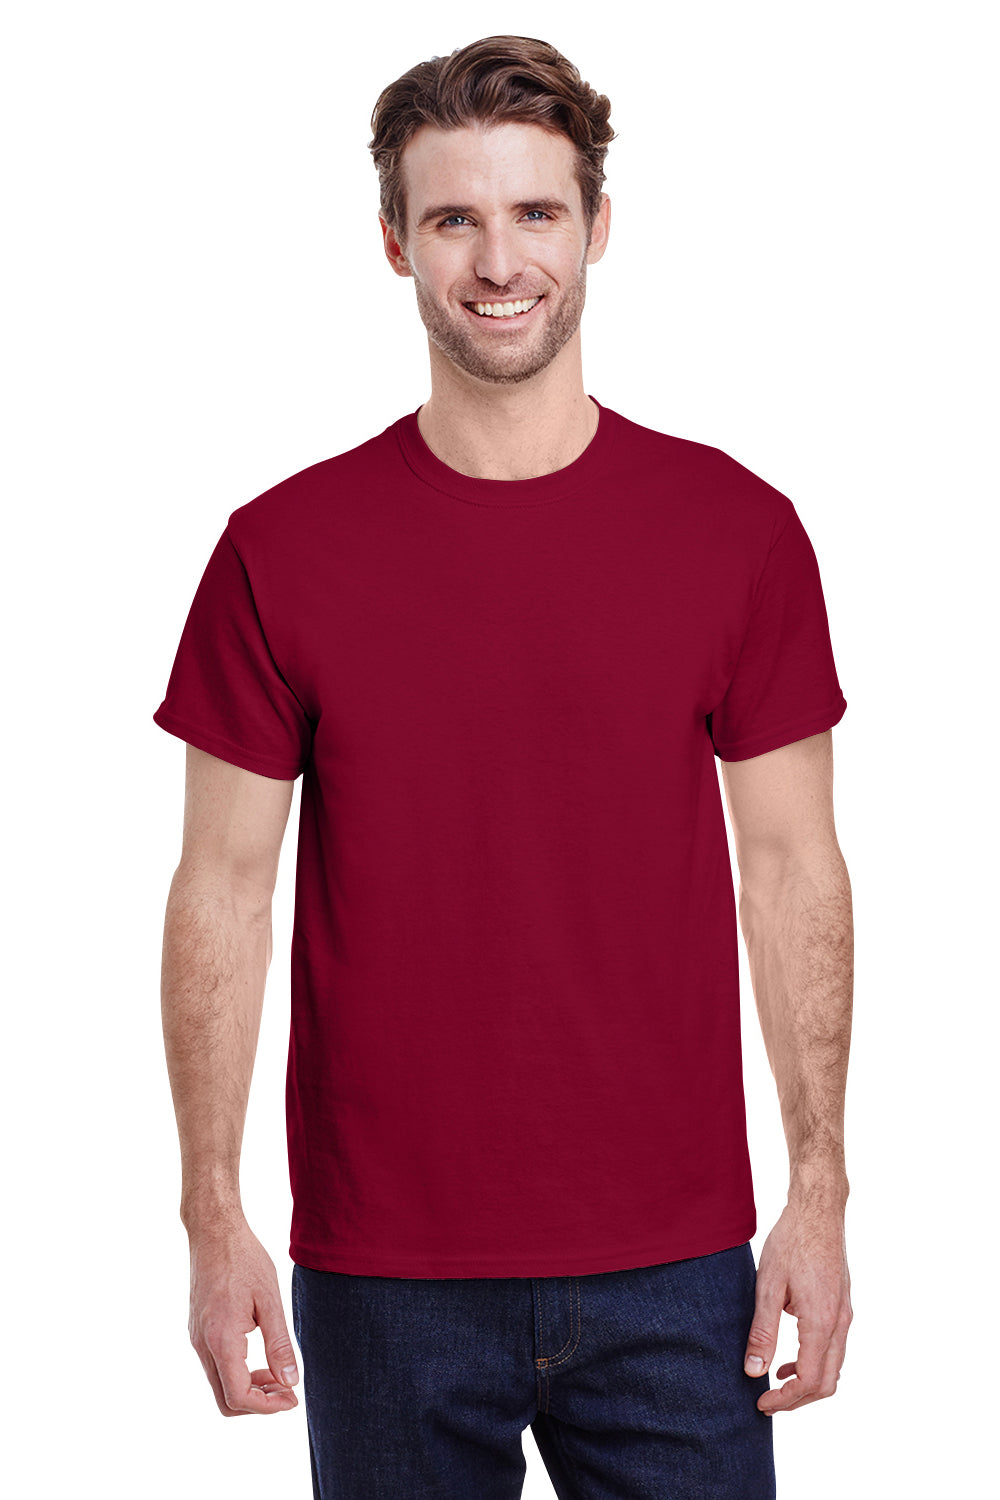 Gildan G500 Mens Short Sleeve Crewneck T-Shirt Cardinal Red Front